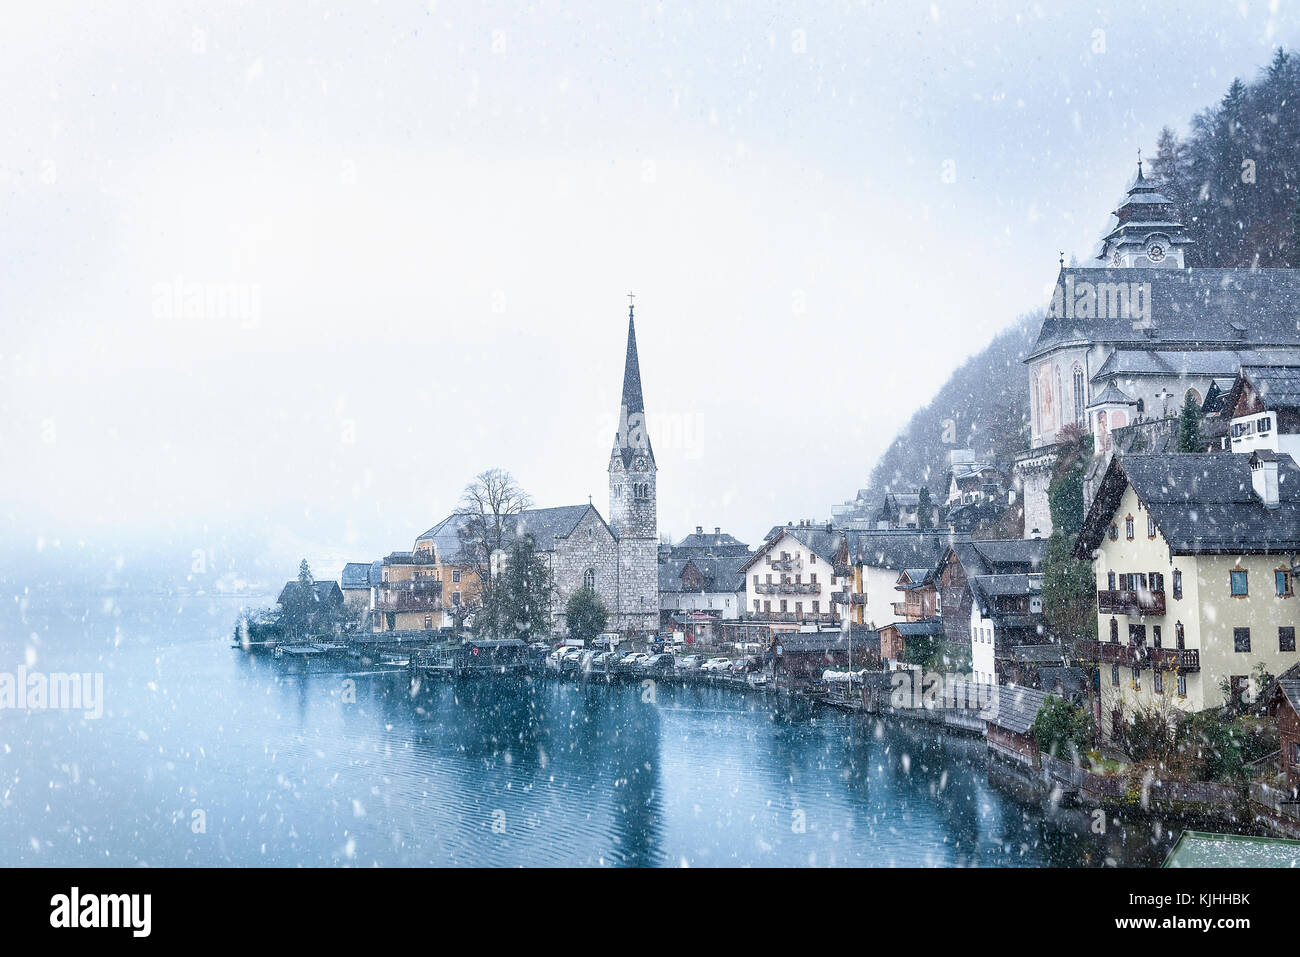 Idílica imagen de invierno con el famoso hallstatt town, uno de los sitios del patrimonio mundial en Austria, situado en la orilla de lago hallstatter Foto de stock